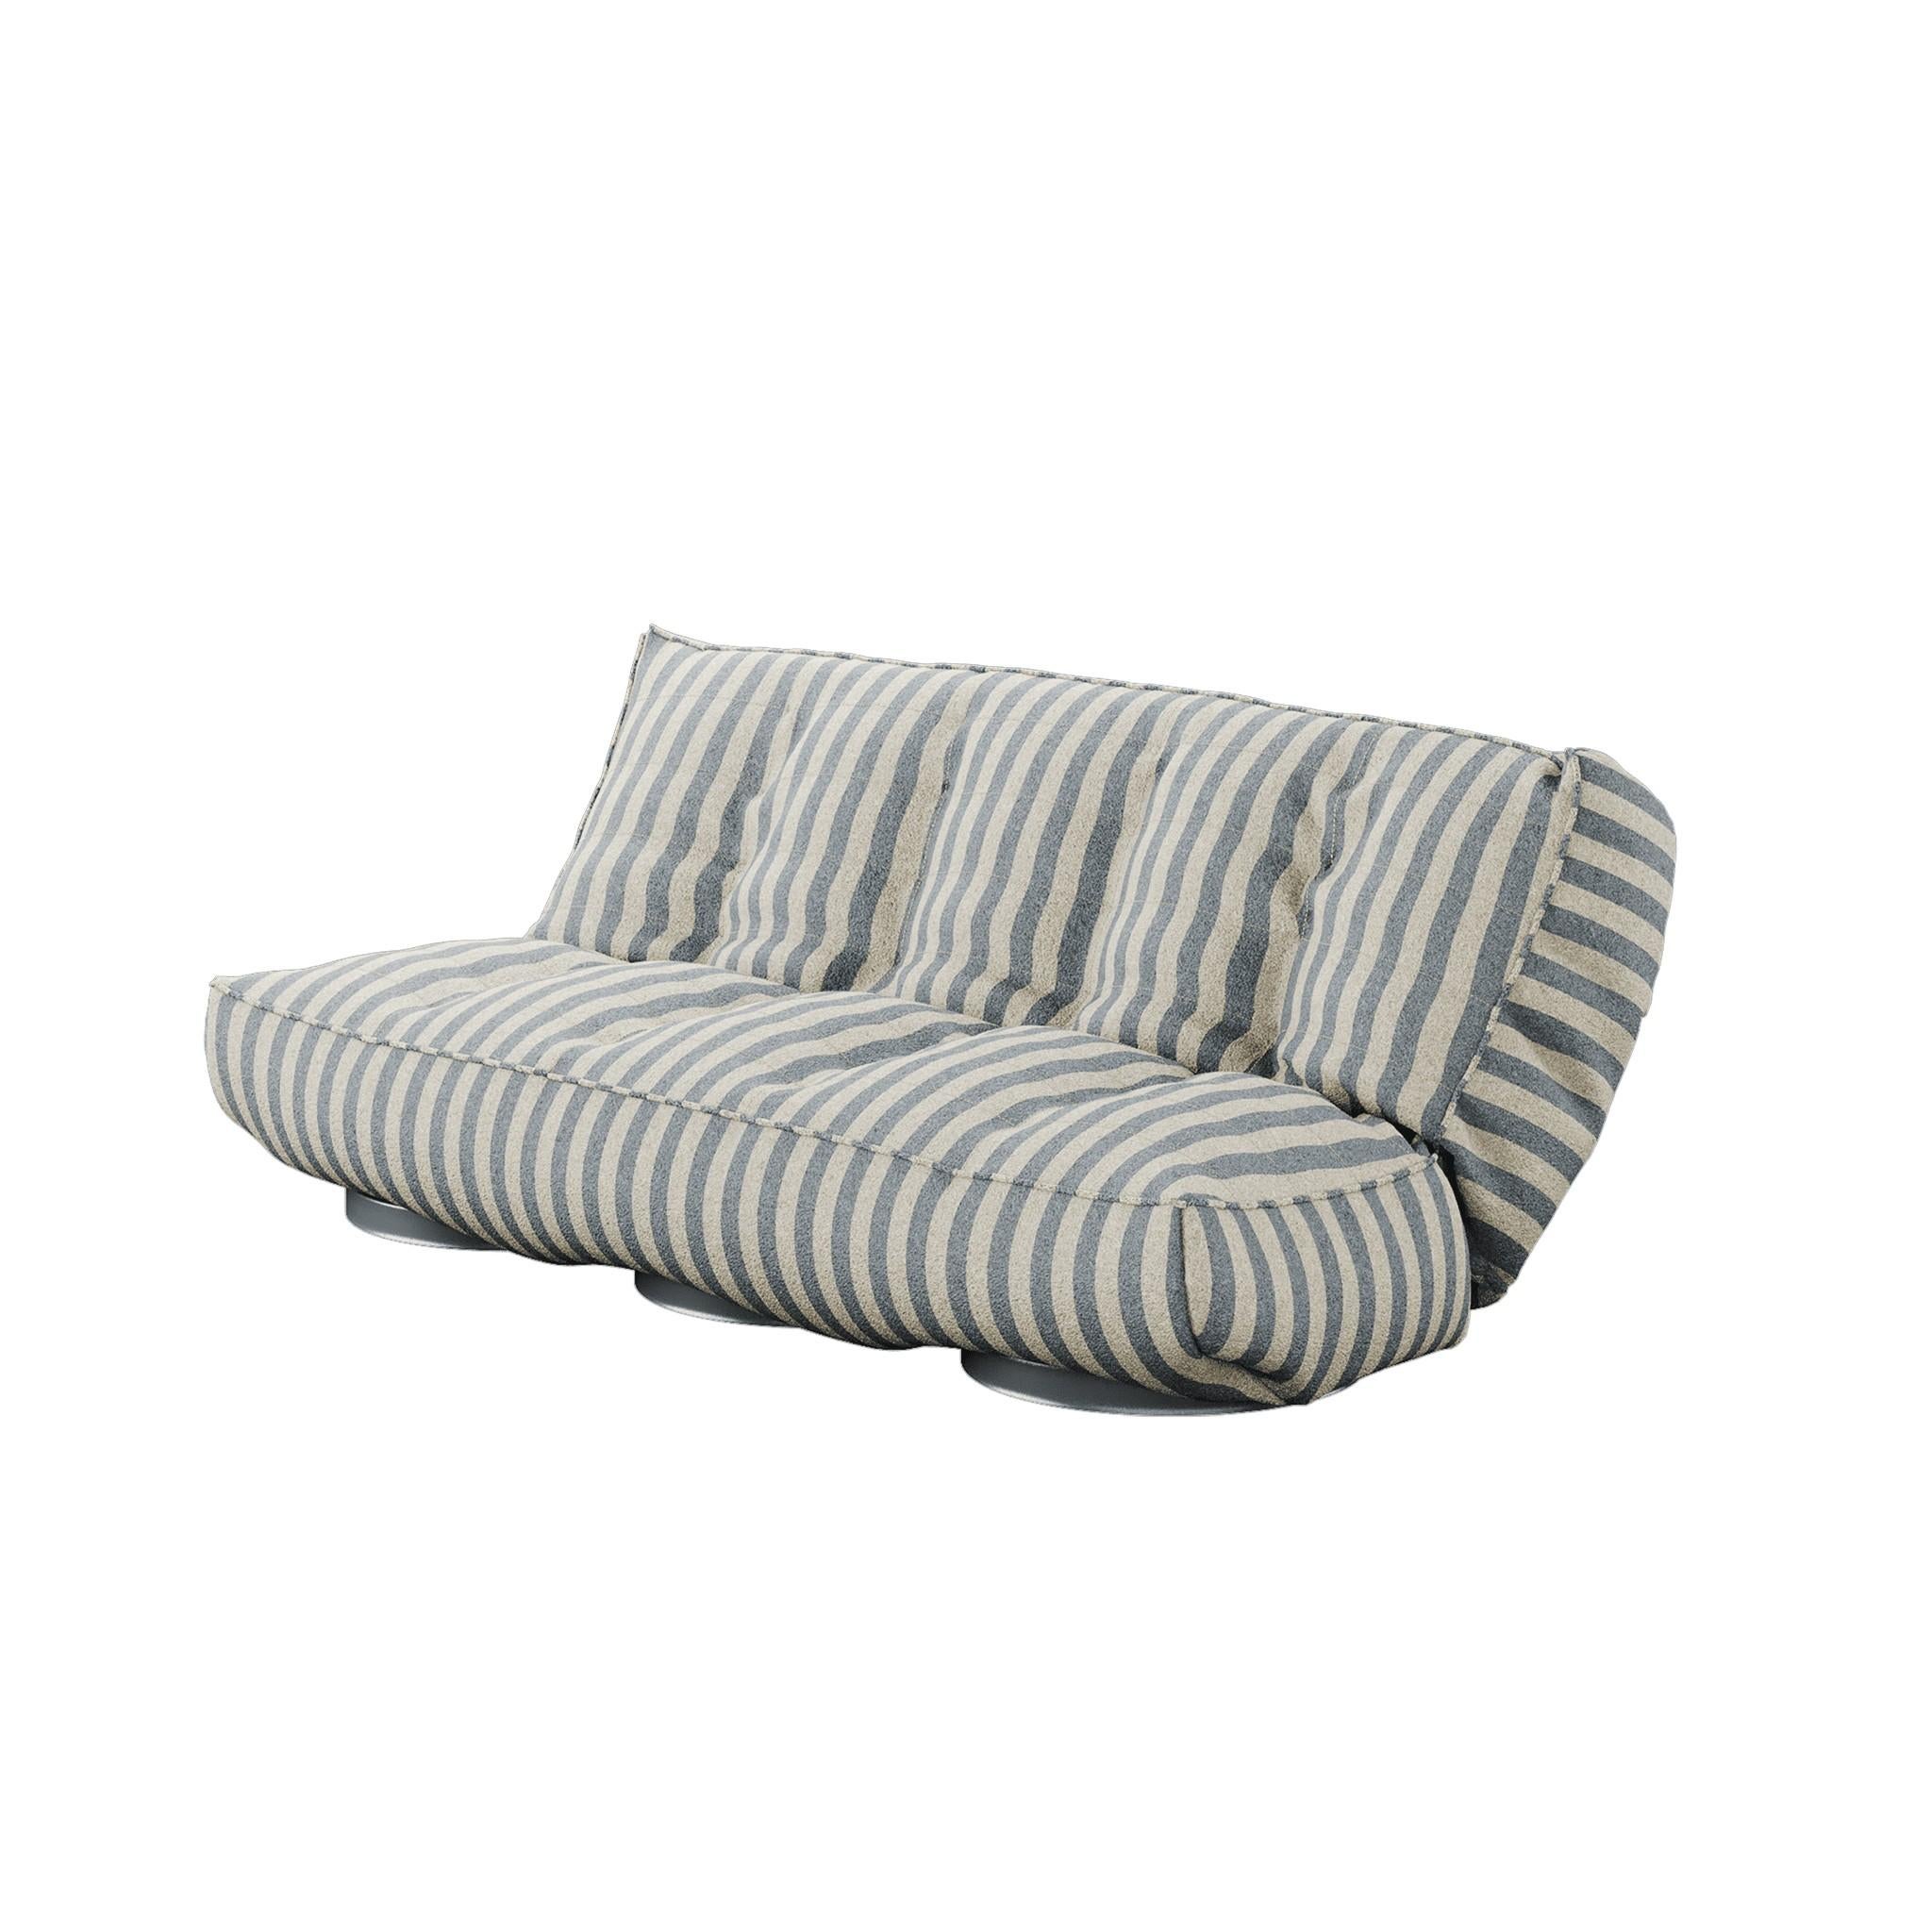 Foil Daybed ist ein luxuriöses Daybed. Sind Sie auf der Suche nach einem modernen Sofa, dessen Design nicht mit der Zeit verblasst? Sie haben es gefunden. Die ergonomische Struktur und die feinen Details von Foil machen ihn bequem, luxuriös und